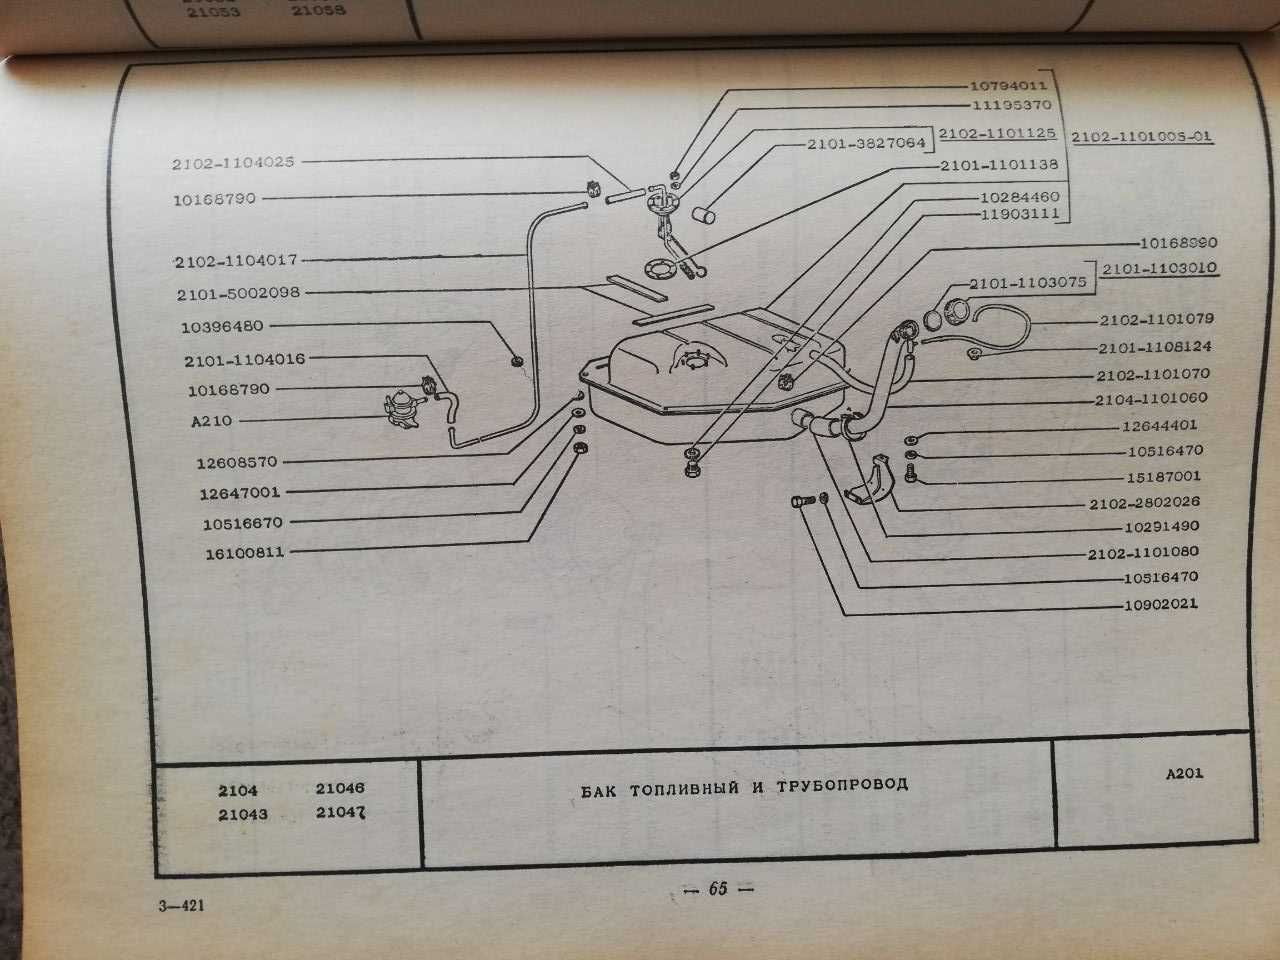 Книга ВАЗ-2105, ВАЗ-2104 и их модификаций. Каталог запасных частей